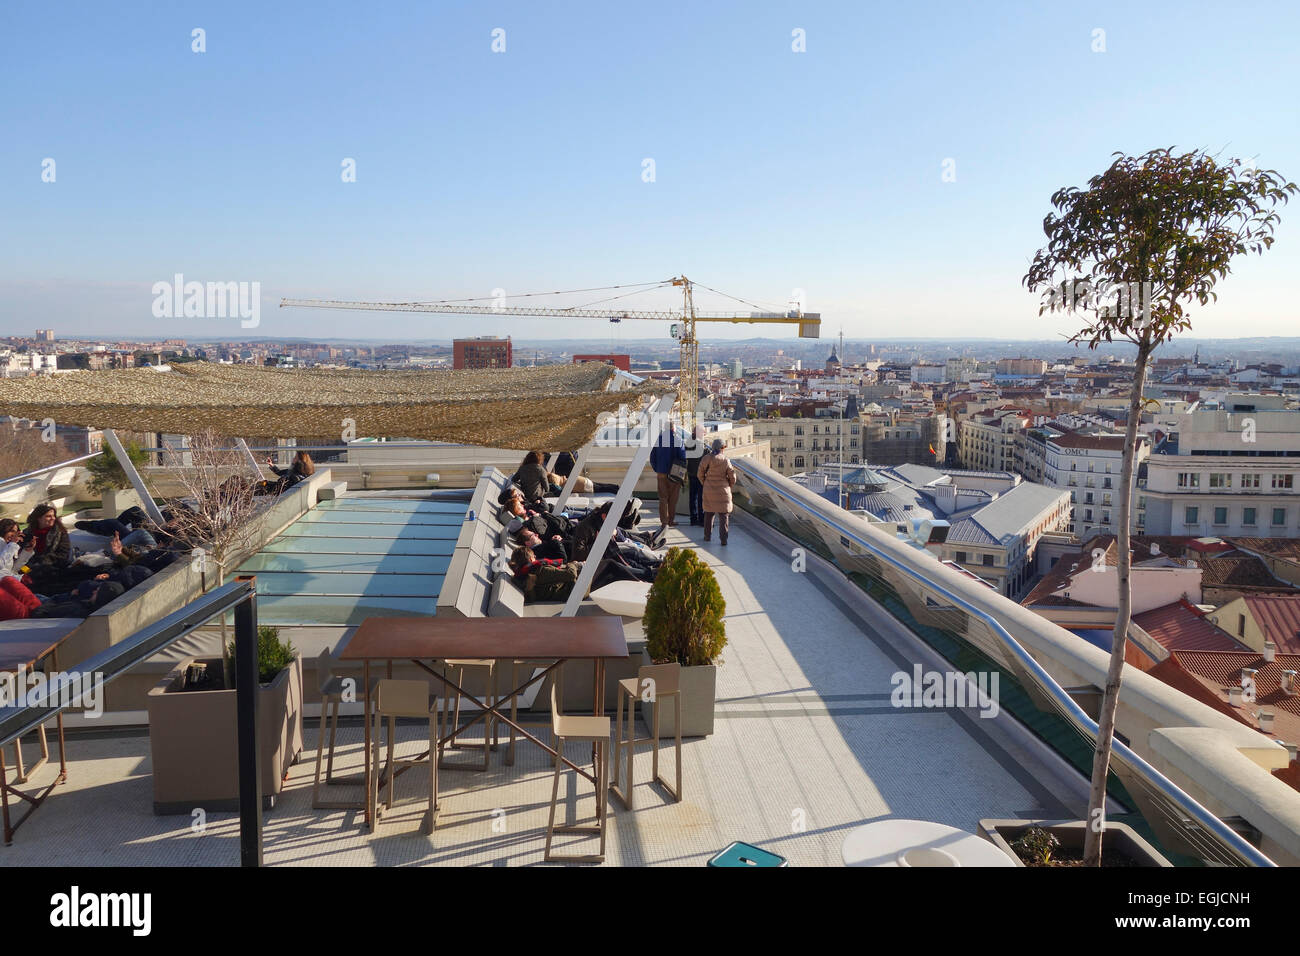 Visiteurs détente sur toit-terrasse. Chaises longues de Circulo de Bellas Artes, Madrid Espagne. Banque D'Images